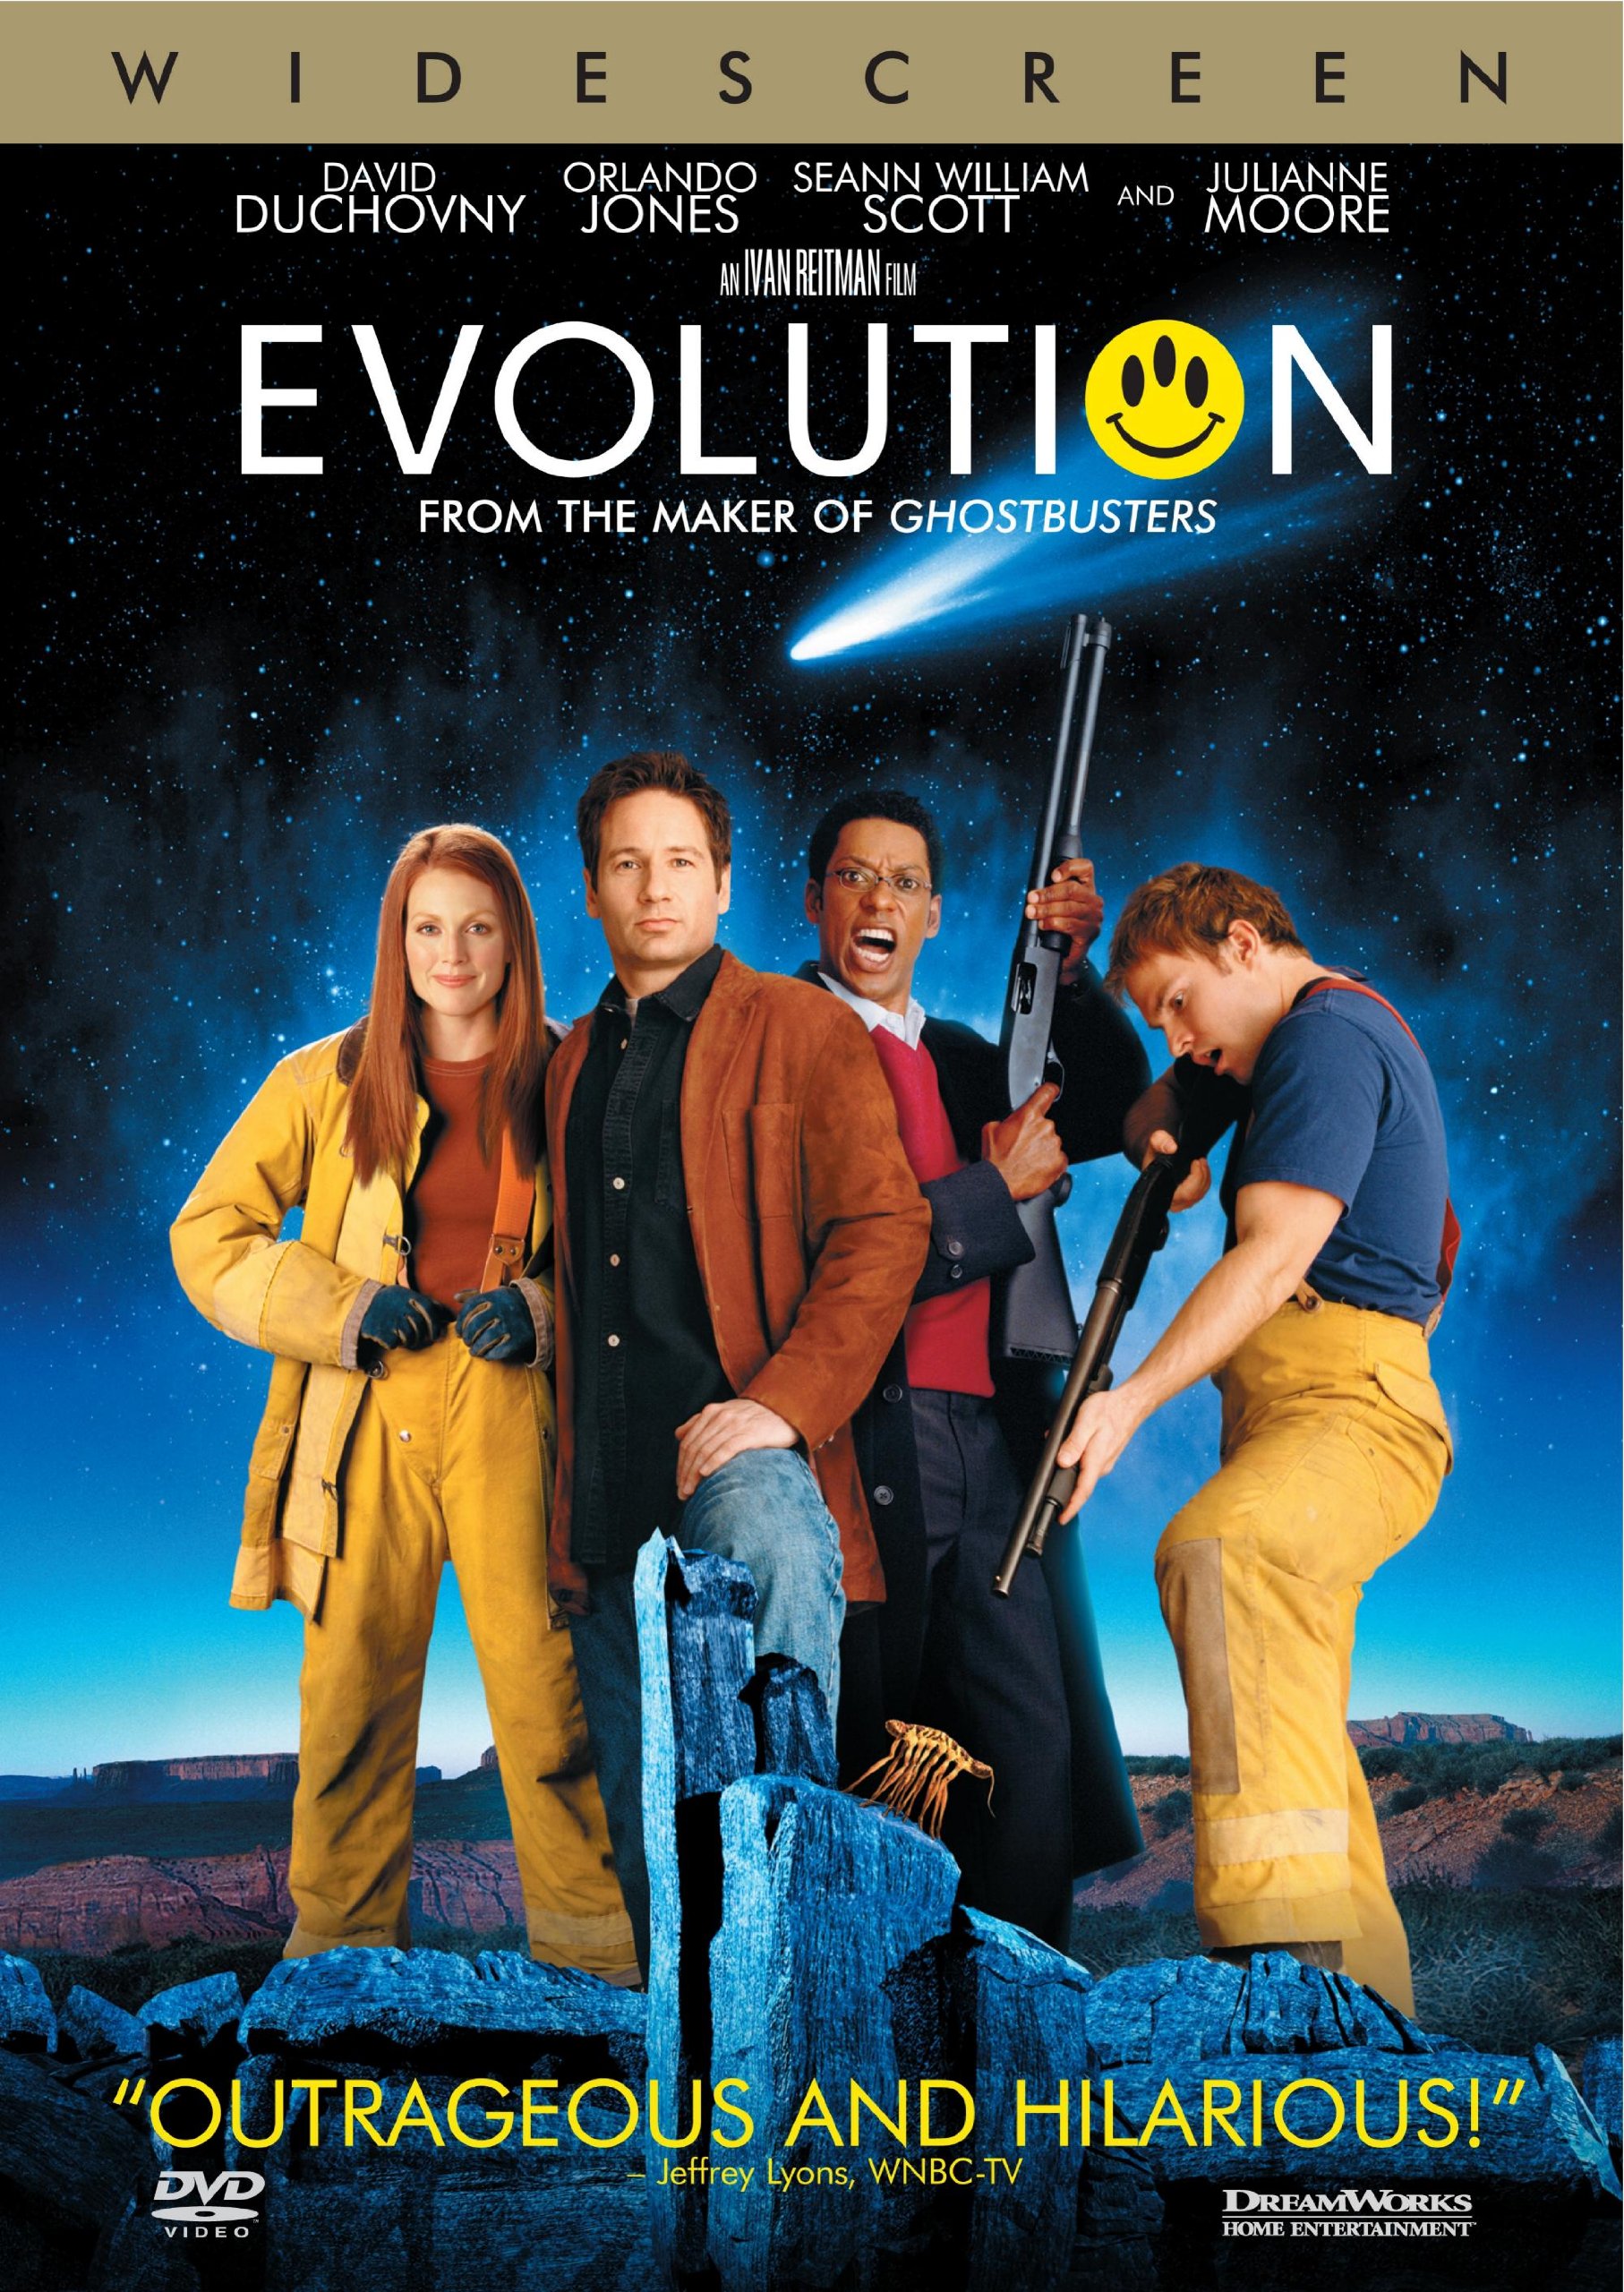 Evolution DVD Release Date December 26, 2001